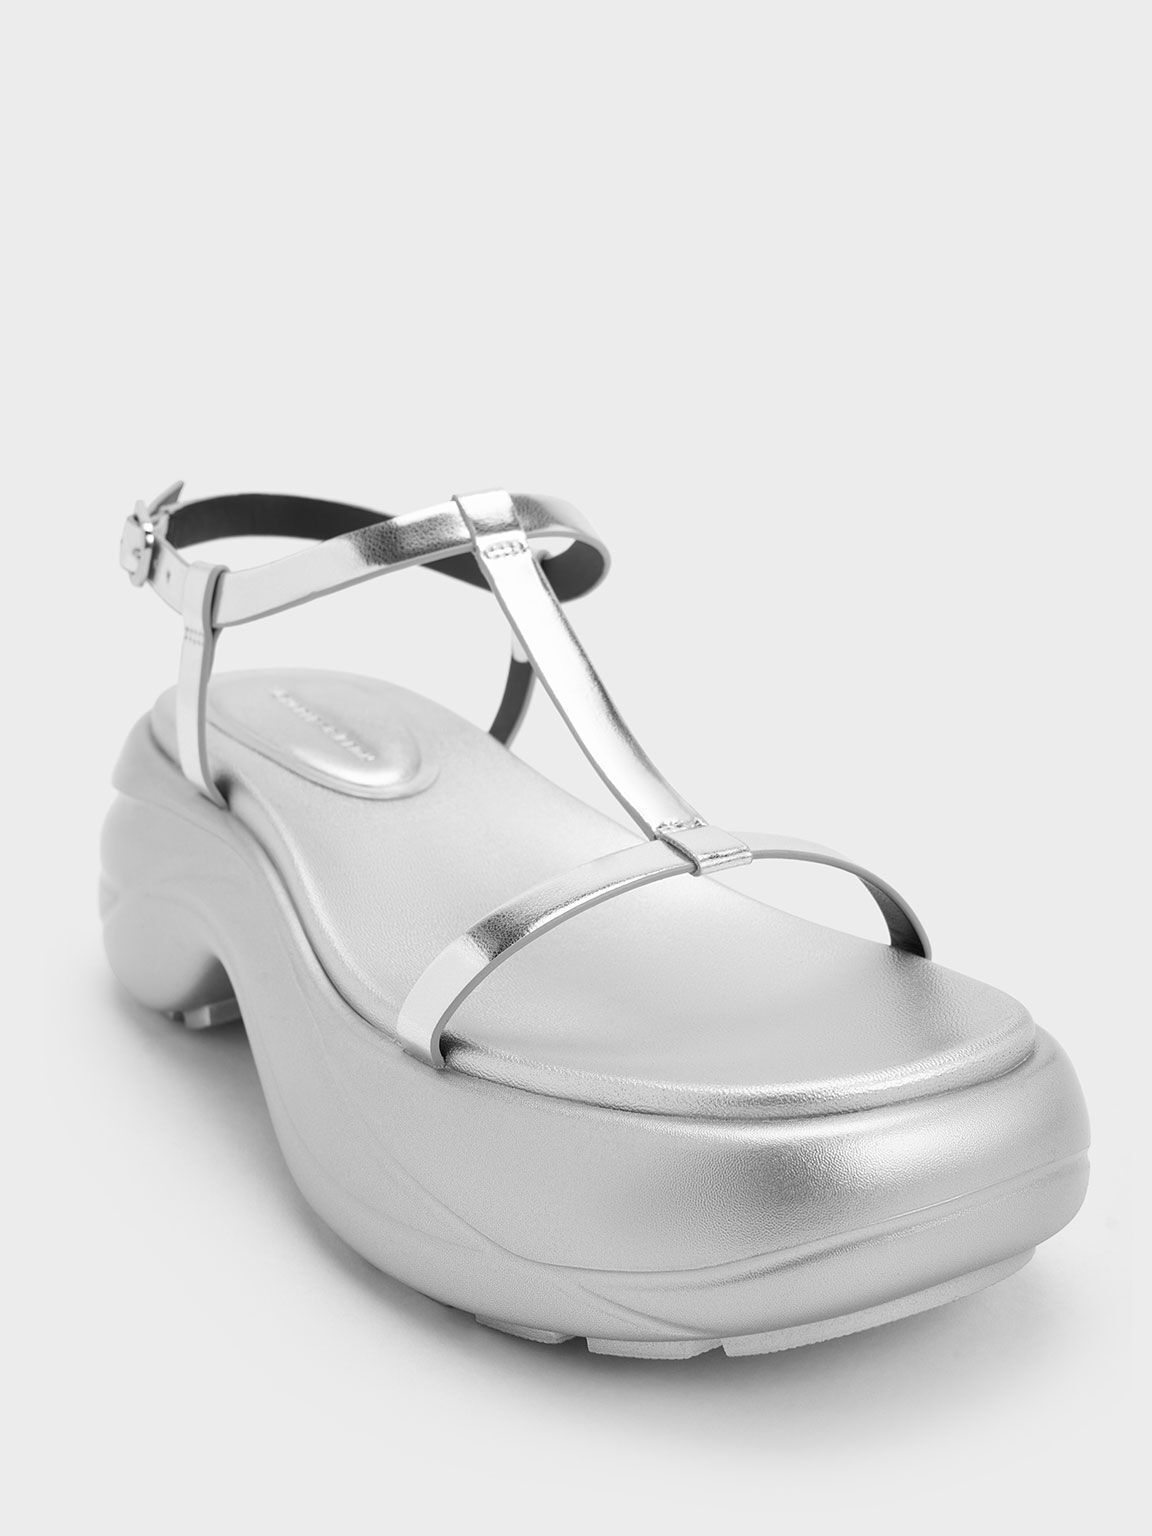 Sandalias deportivas metalizadas de plataforma curvada con tira en T, Plateado, hi-res